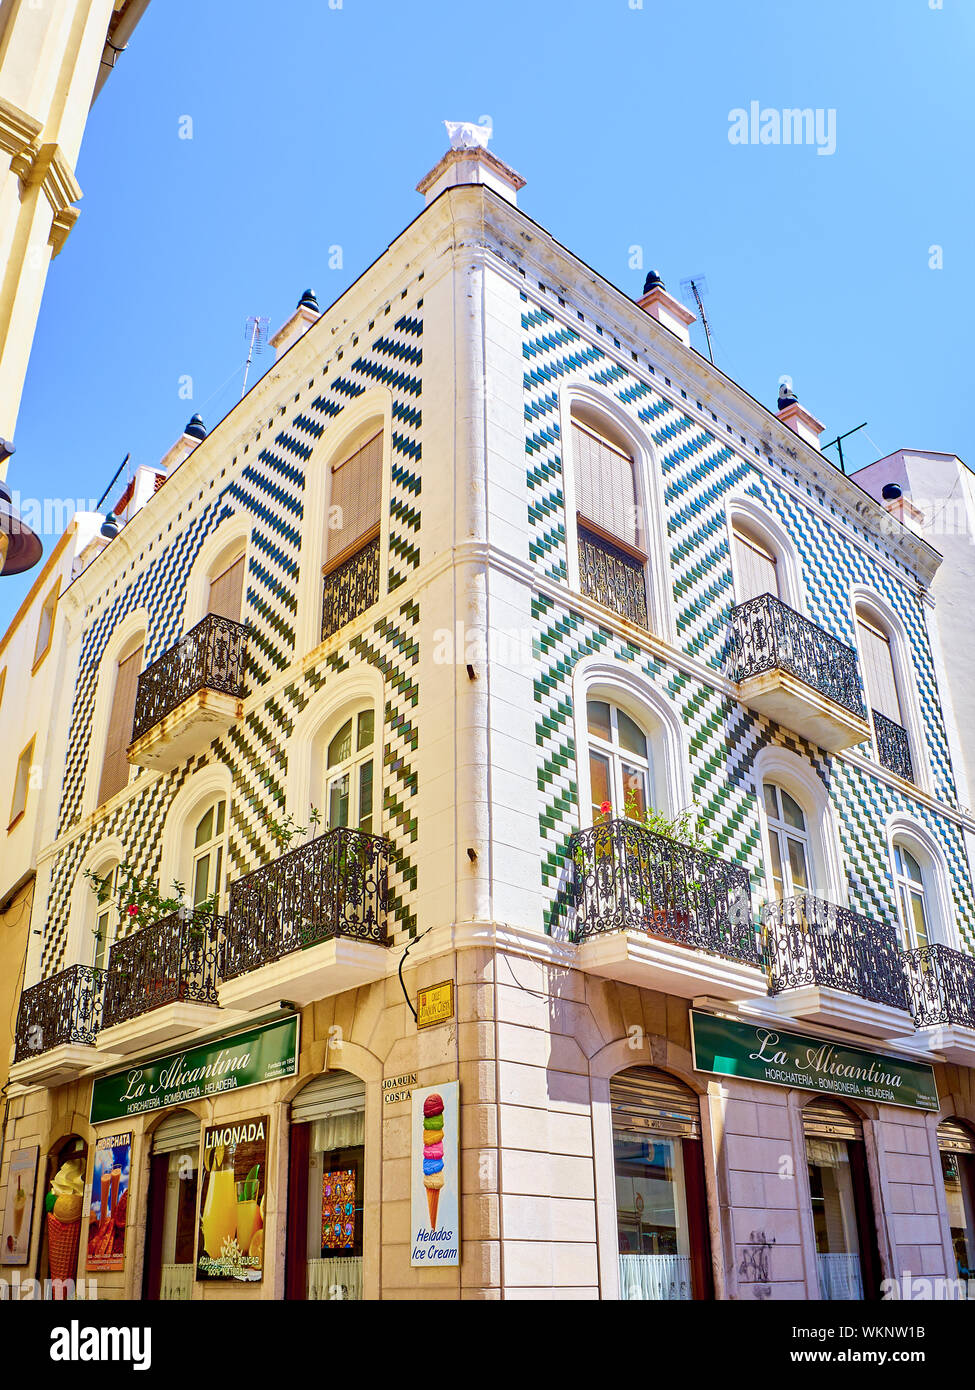 Algeciras, Espagne - Juin 29, 2019. Sol carrelé typique bâtiment de Algeciras centre-ville. La province de Cádiz, Andalousie, espagne. Banque D'Images